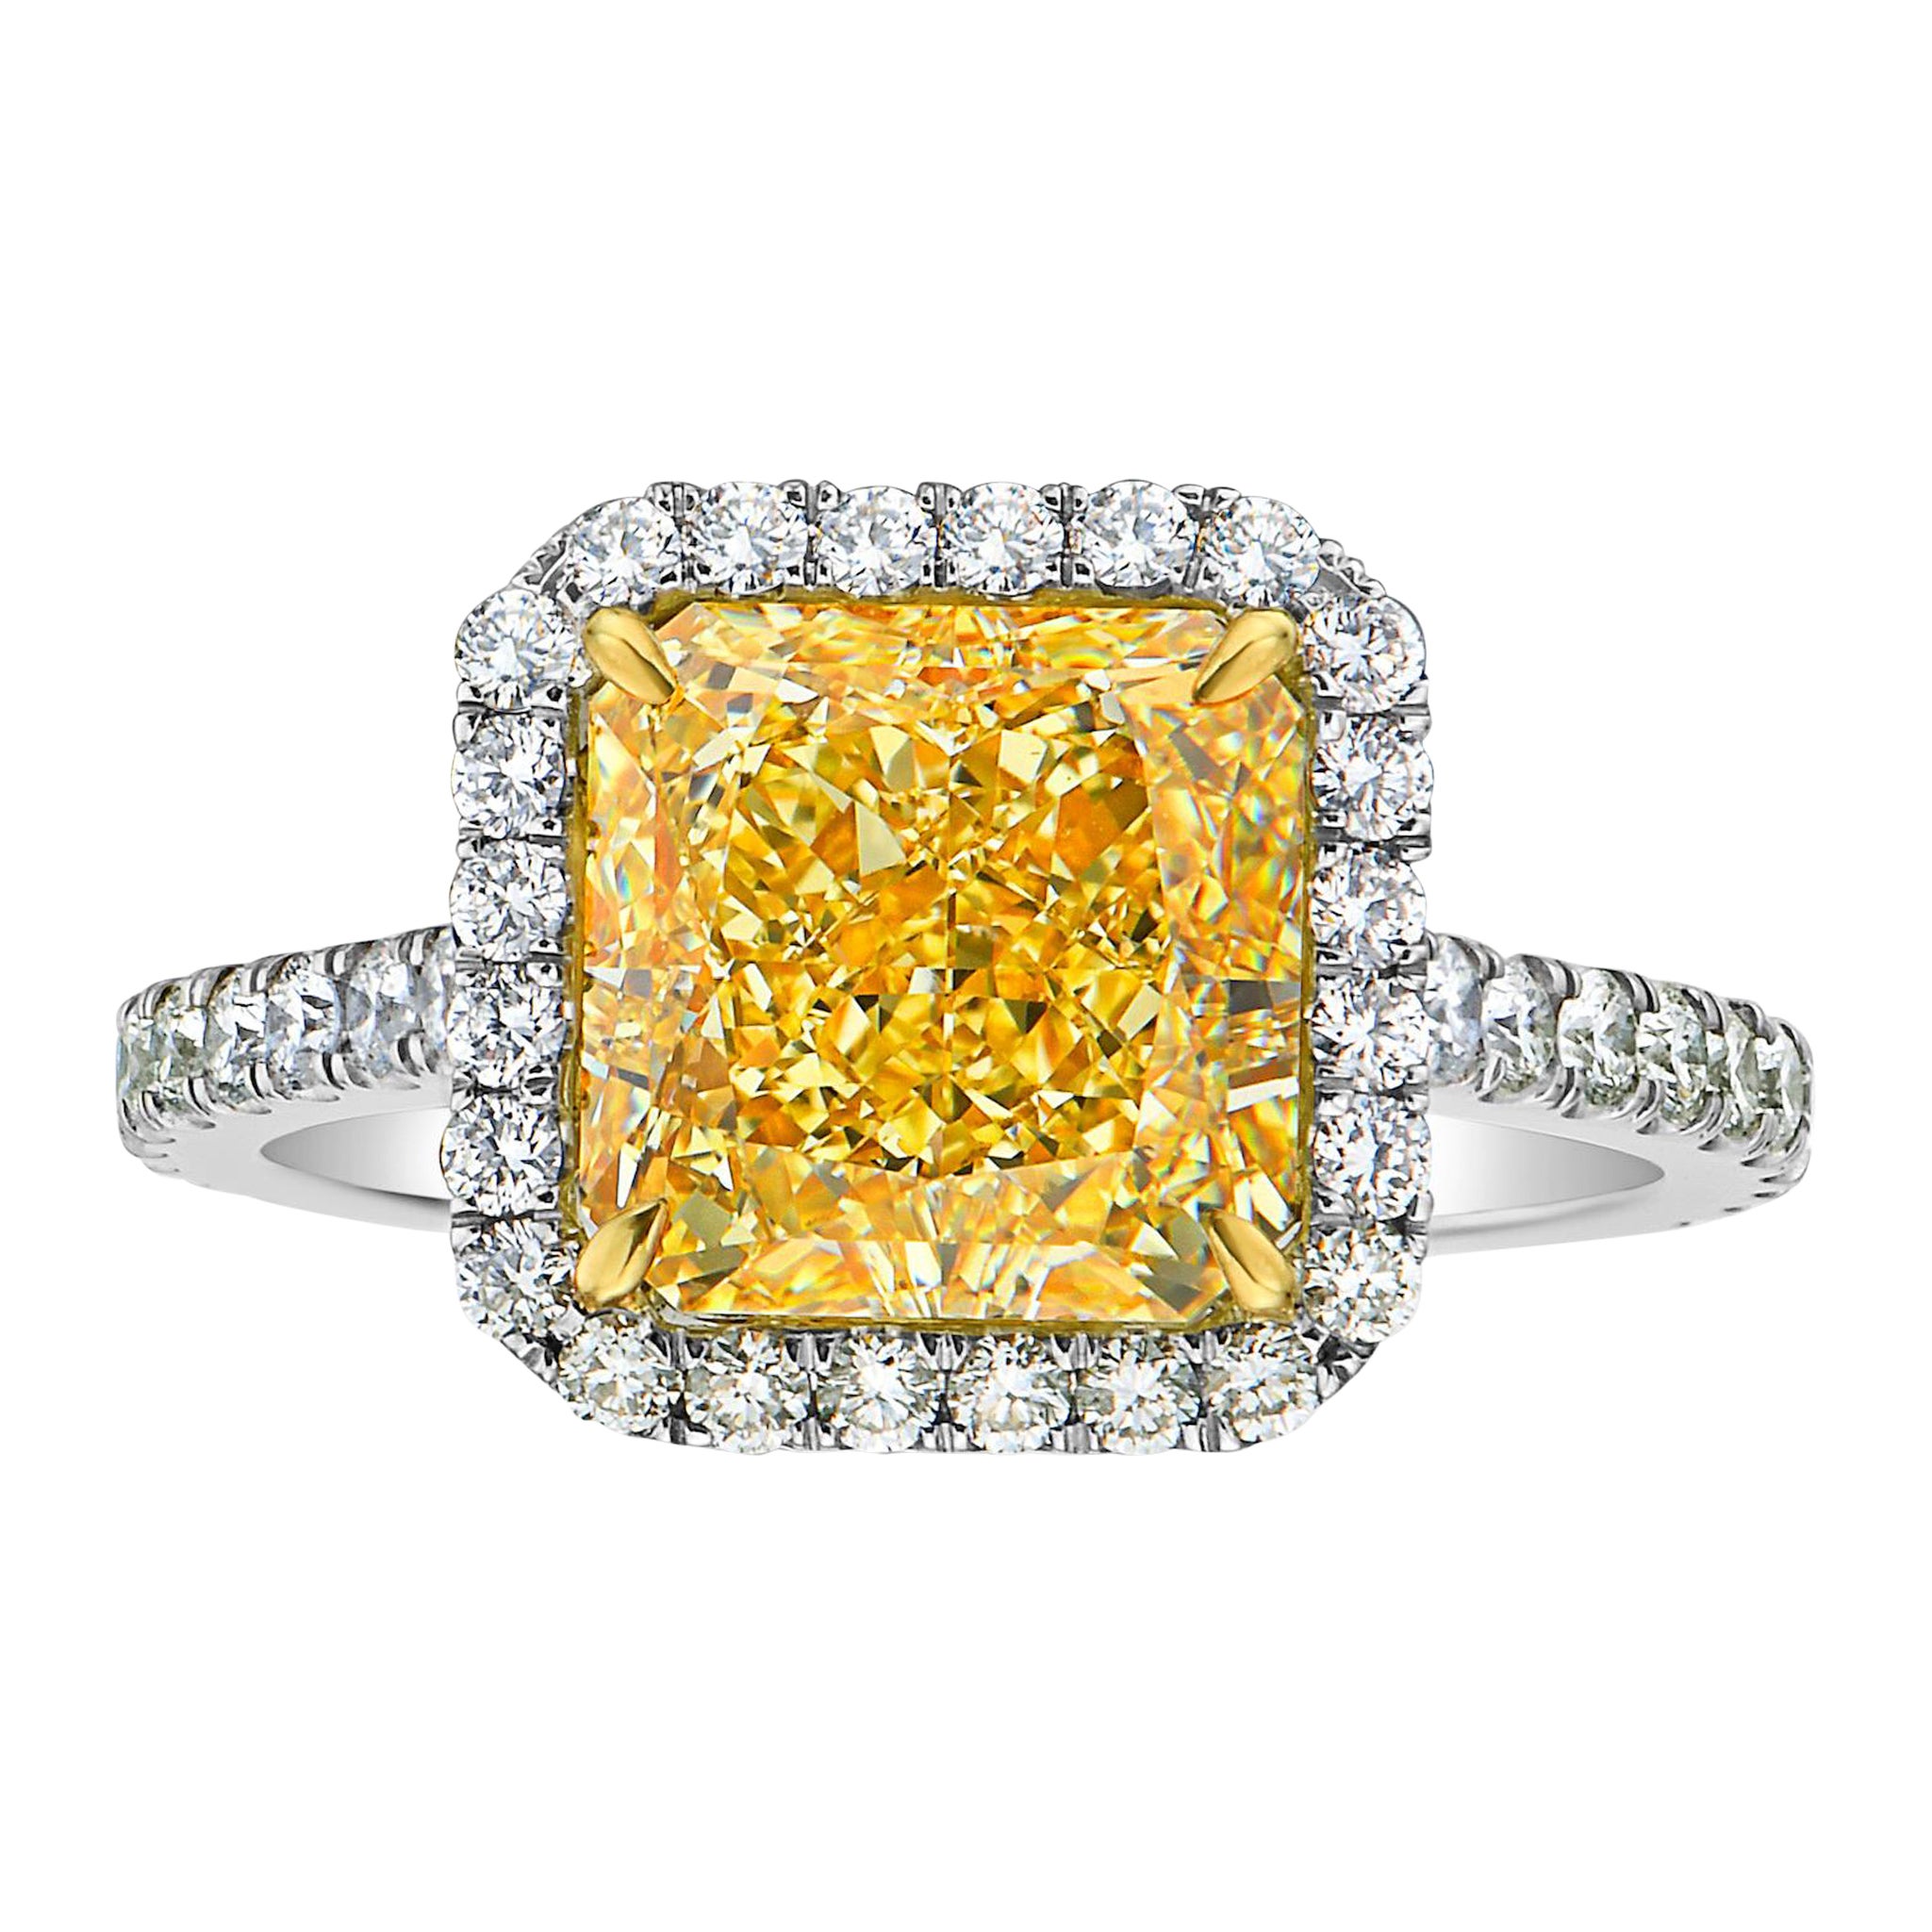 Bague halo de diamants jaunes clairs fantaisie de 4 carats